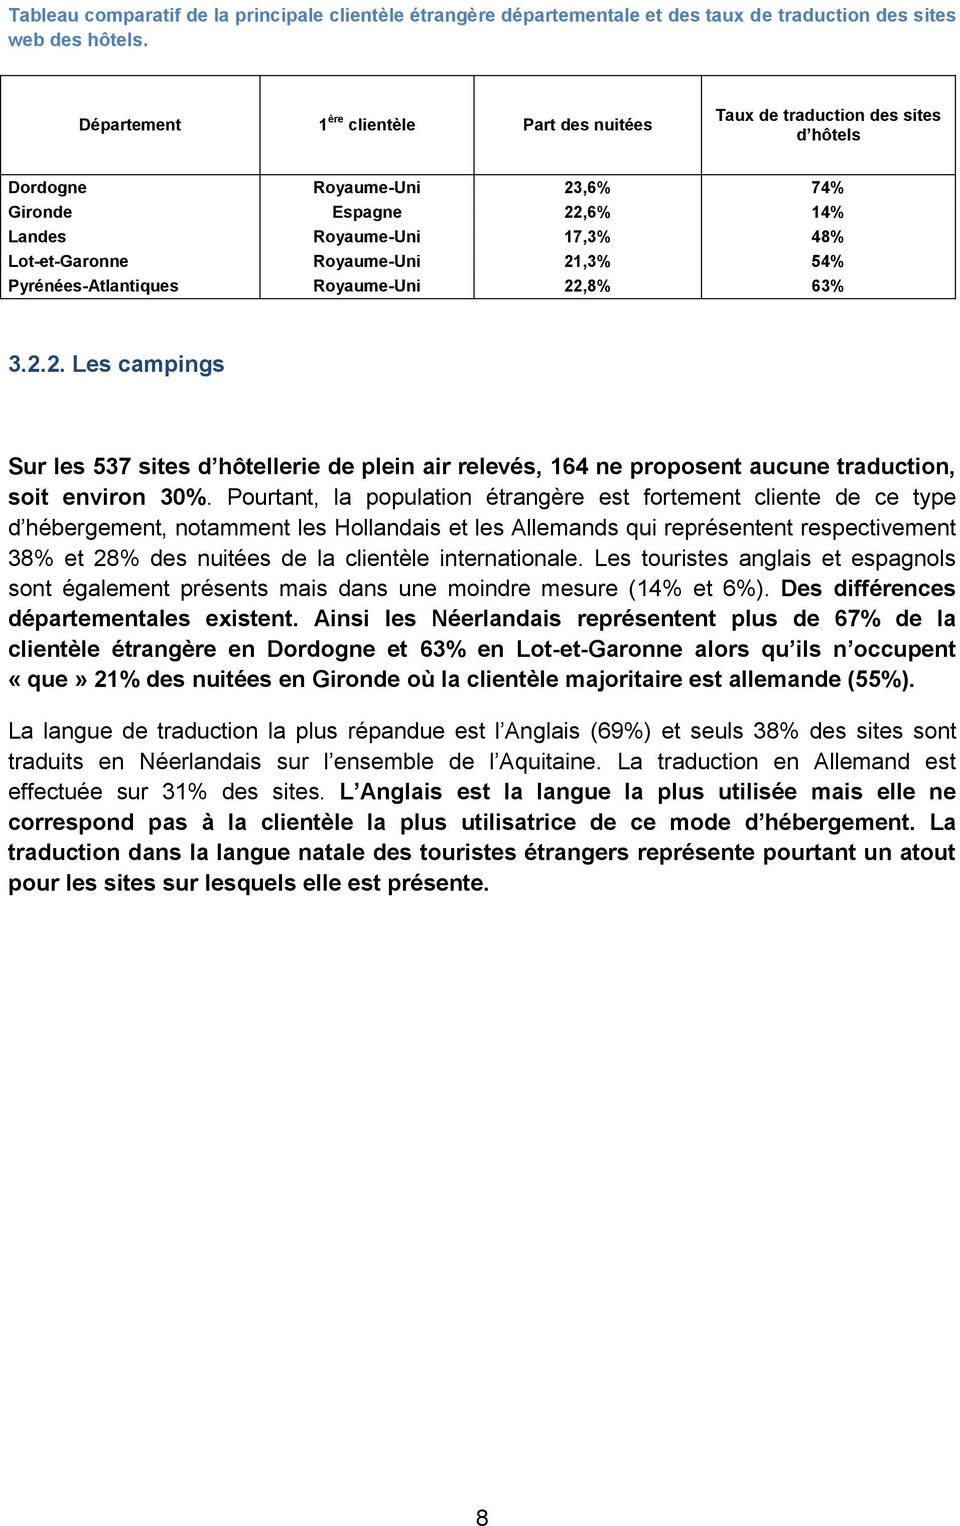 Pyrénées-Atlantiques Royaume-Uni 22,8% 63% 3.2.2. Les campings Sur les 537 sites d hôtellerie de plein air relevés, 164 ne proposent aucune traduction, soit environ 30%.